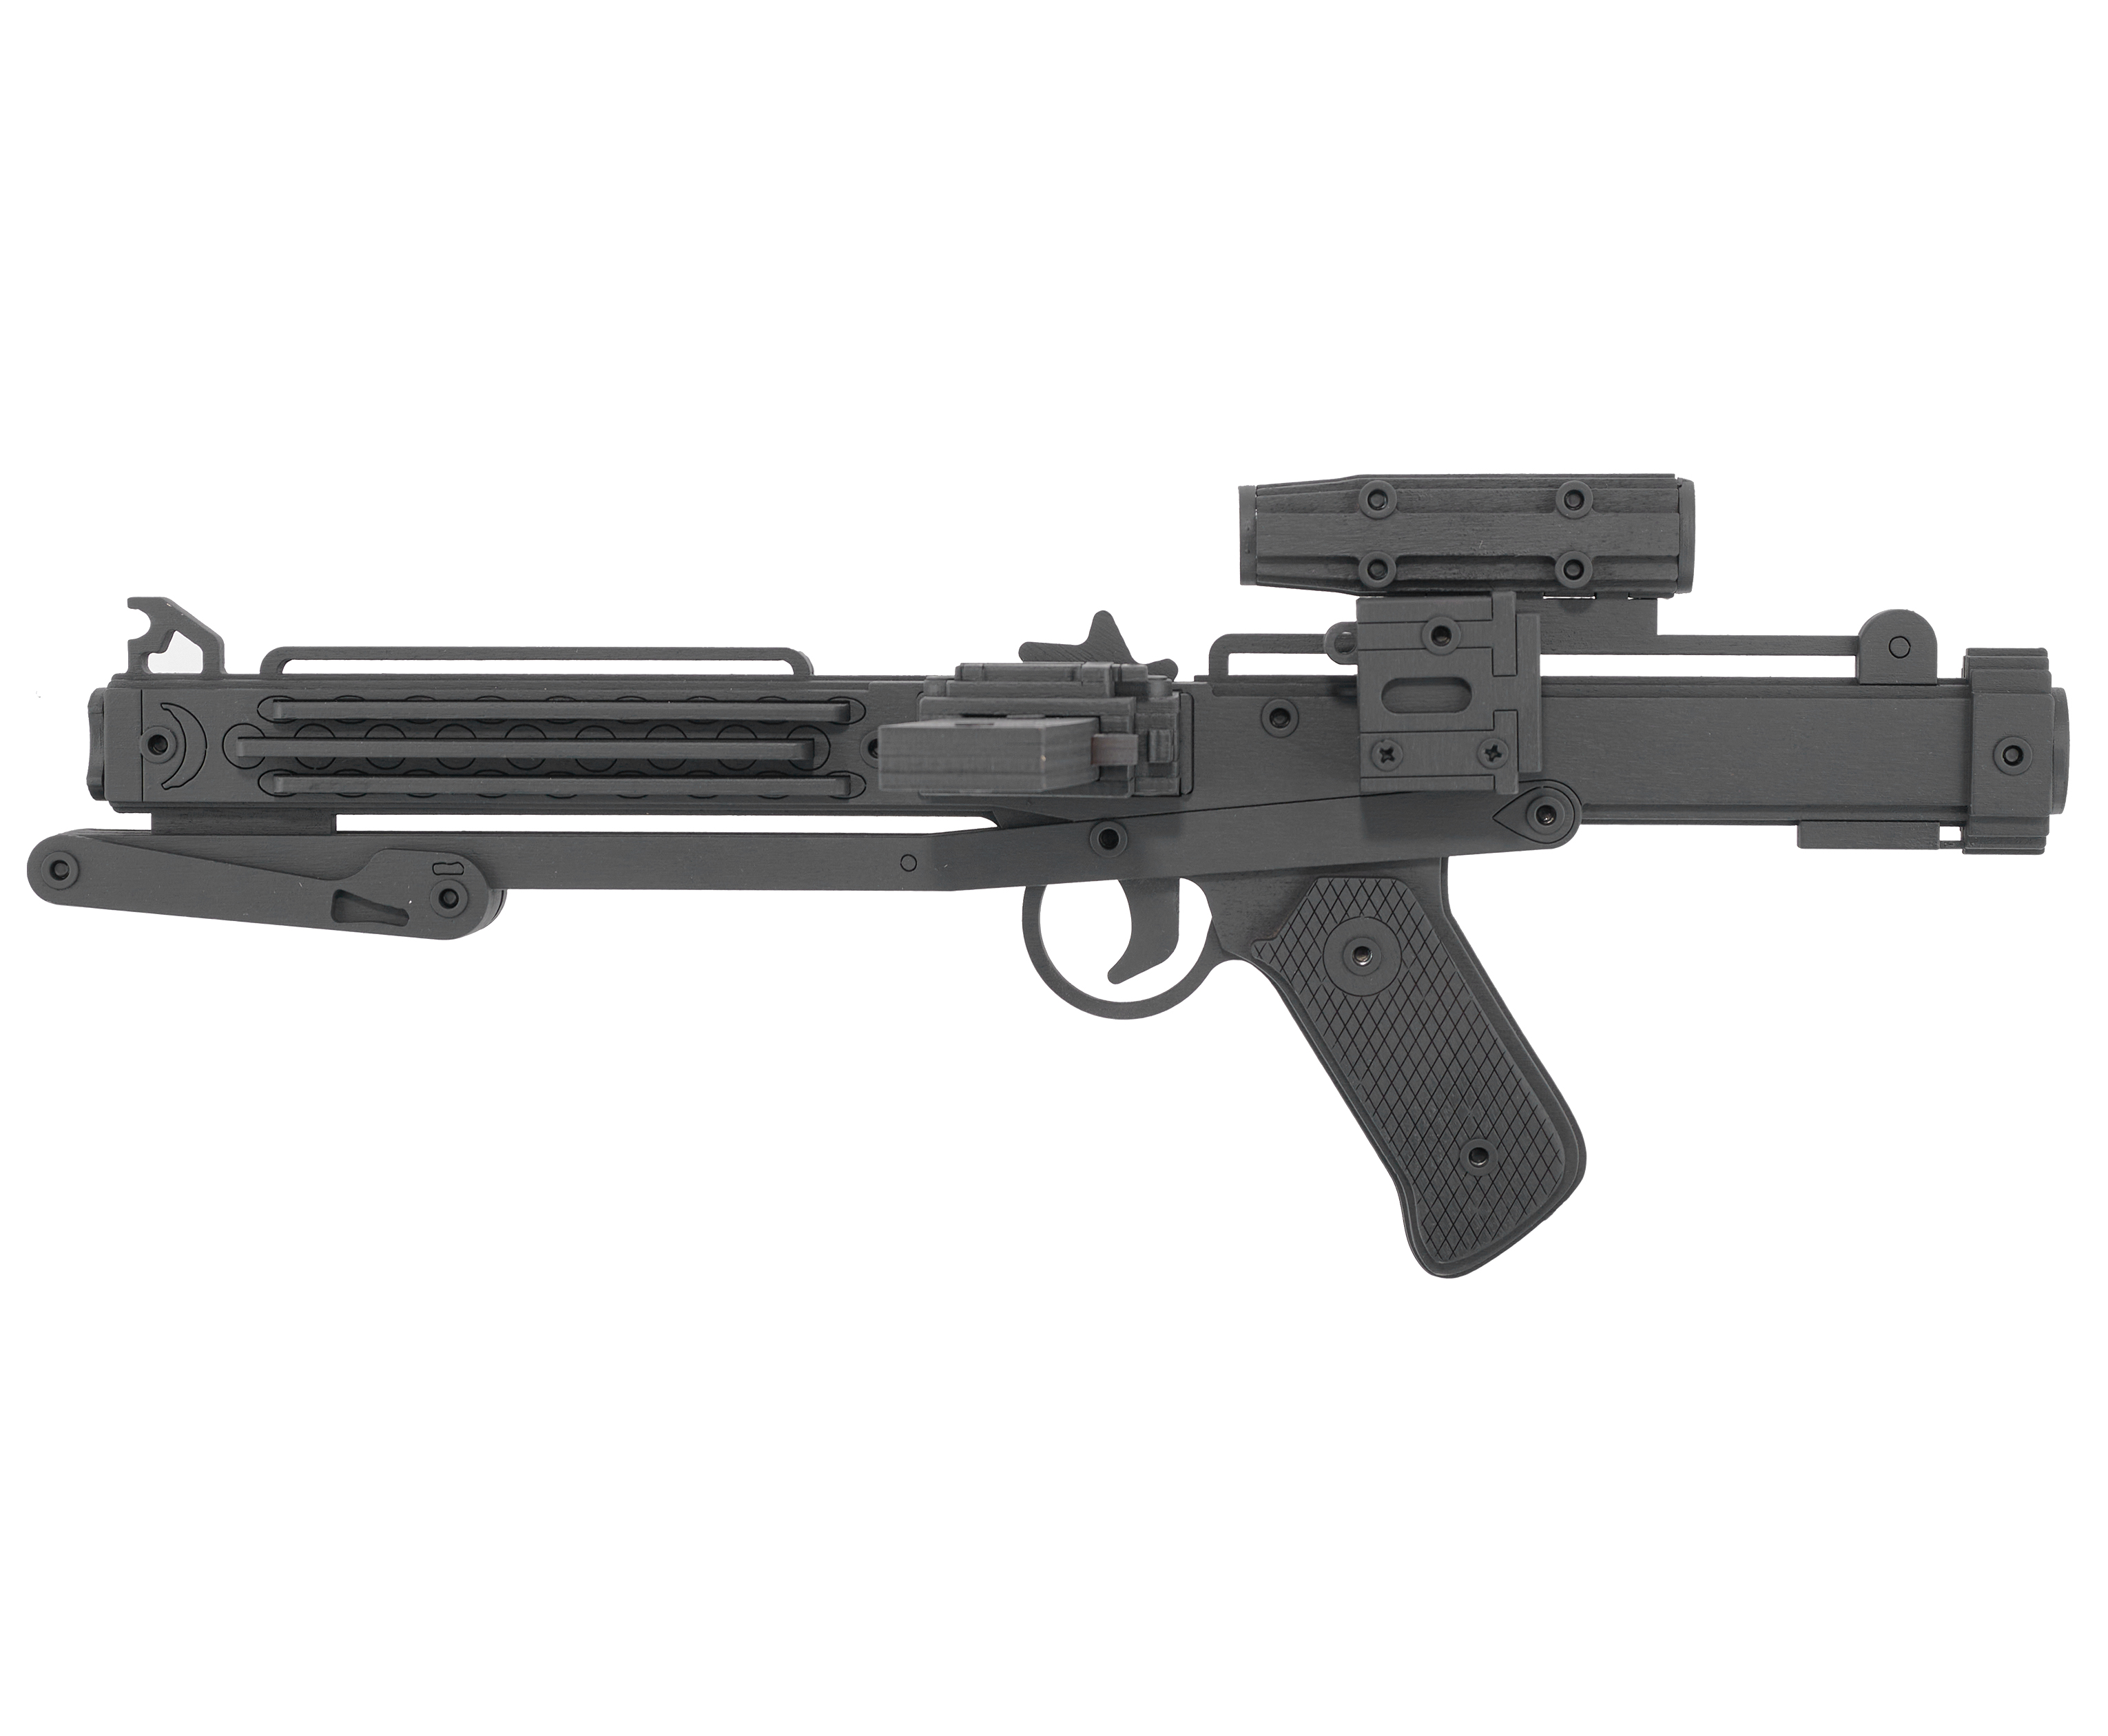 Резинкострел игрушечный Arma toys лазерная винтовка E-11 макет, Star Wars, AT011 резинкострел arma toys снайперская винтовка мосина штык прицел at018